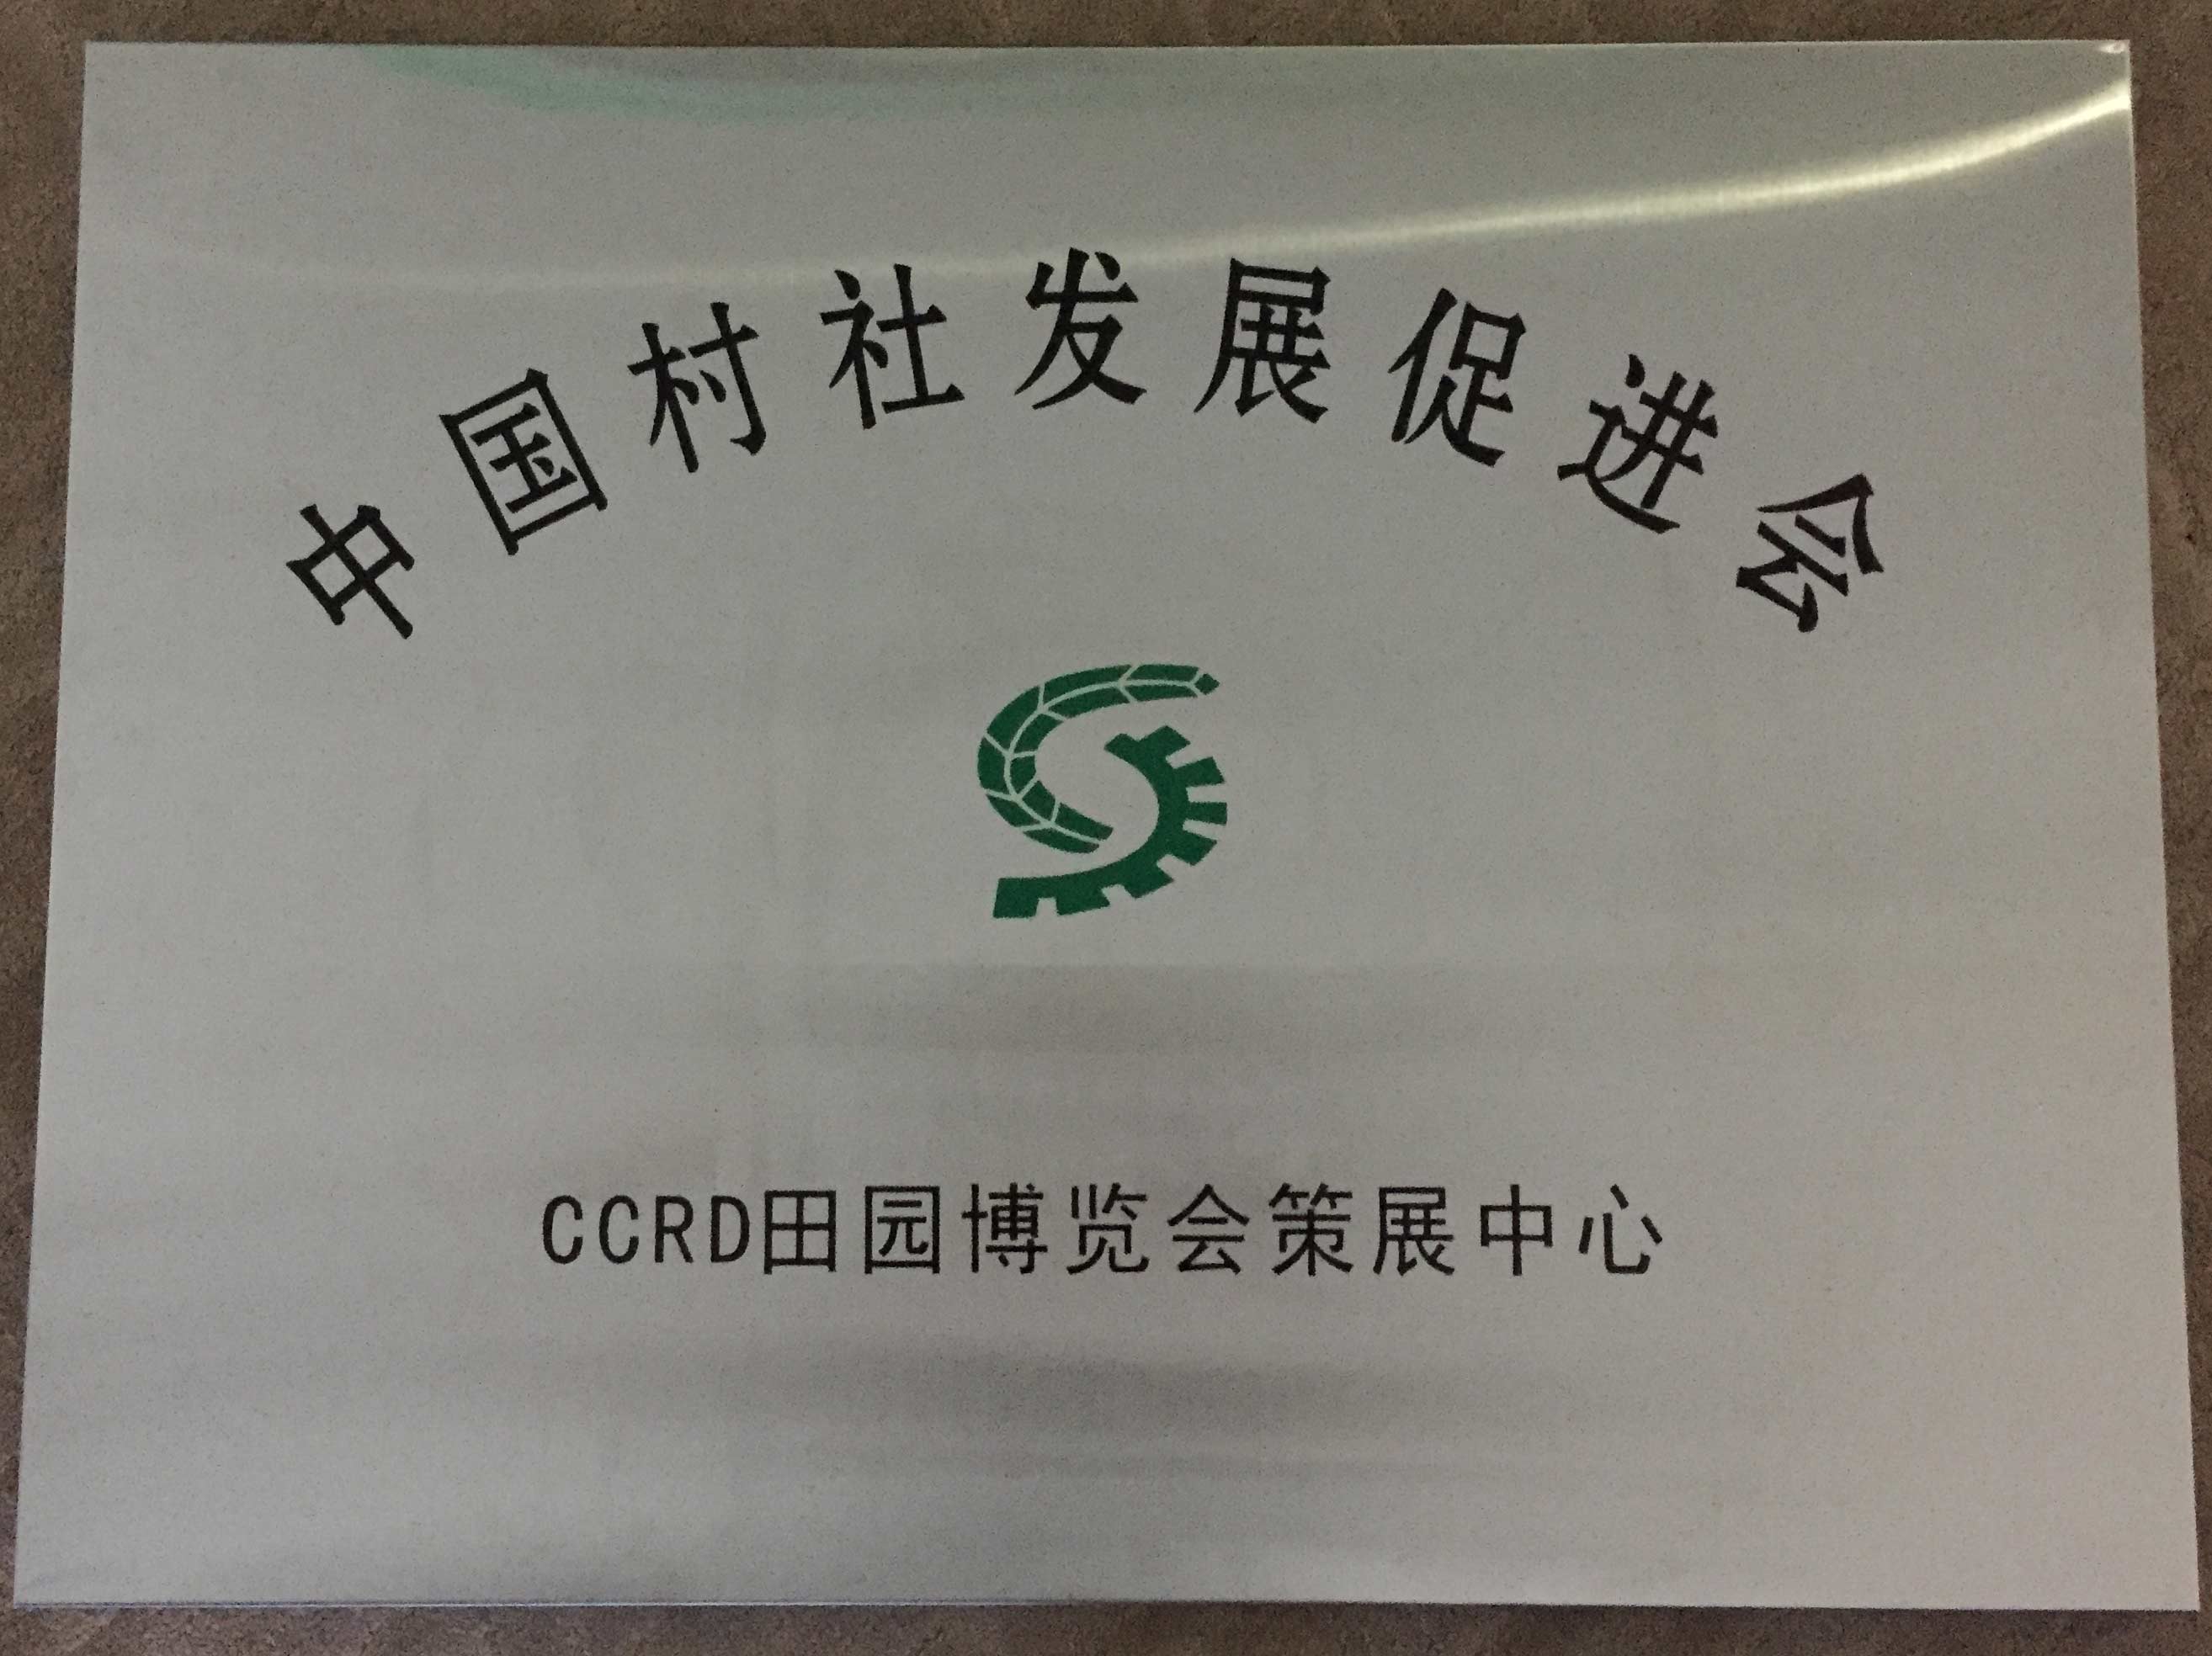 中国村社发展促进会CCRD田园博览会策展中心